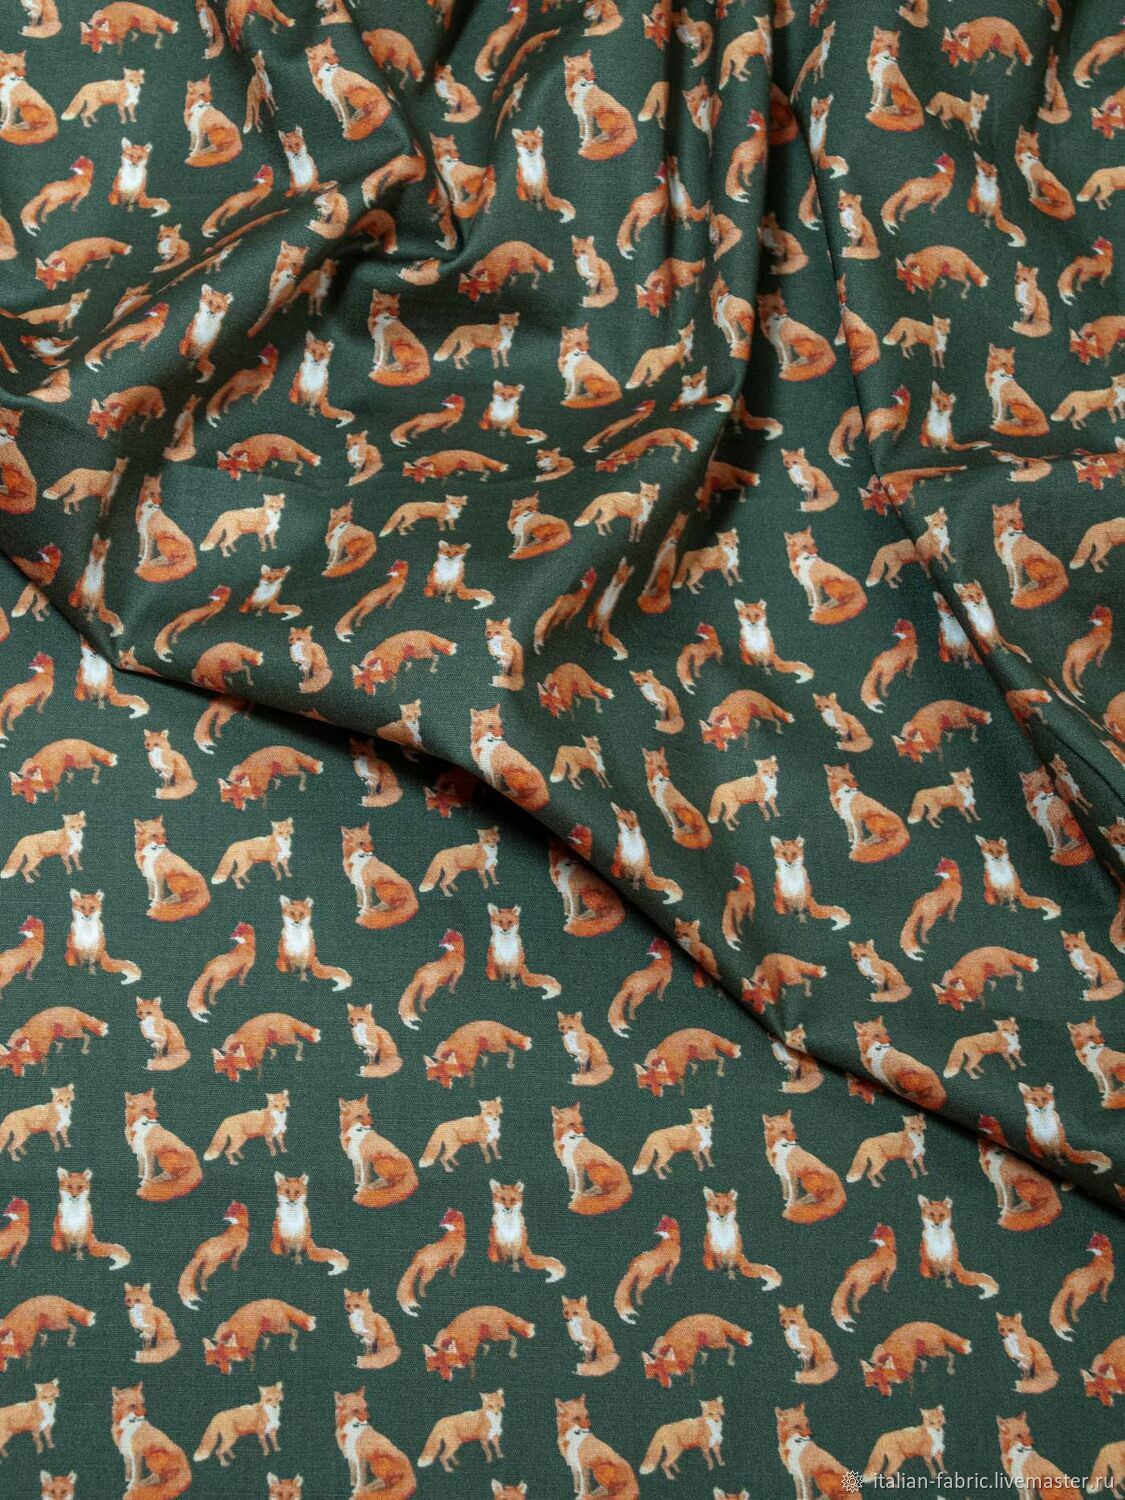 Сорочечный хлопок с лисичками, фон серо-зеленый, 1052213, Ткани, Королев,  Фото №1